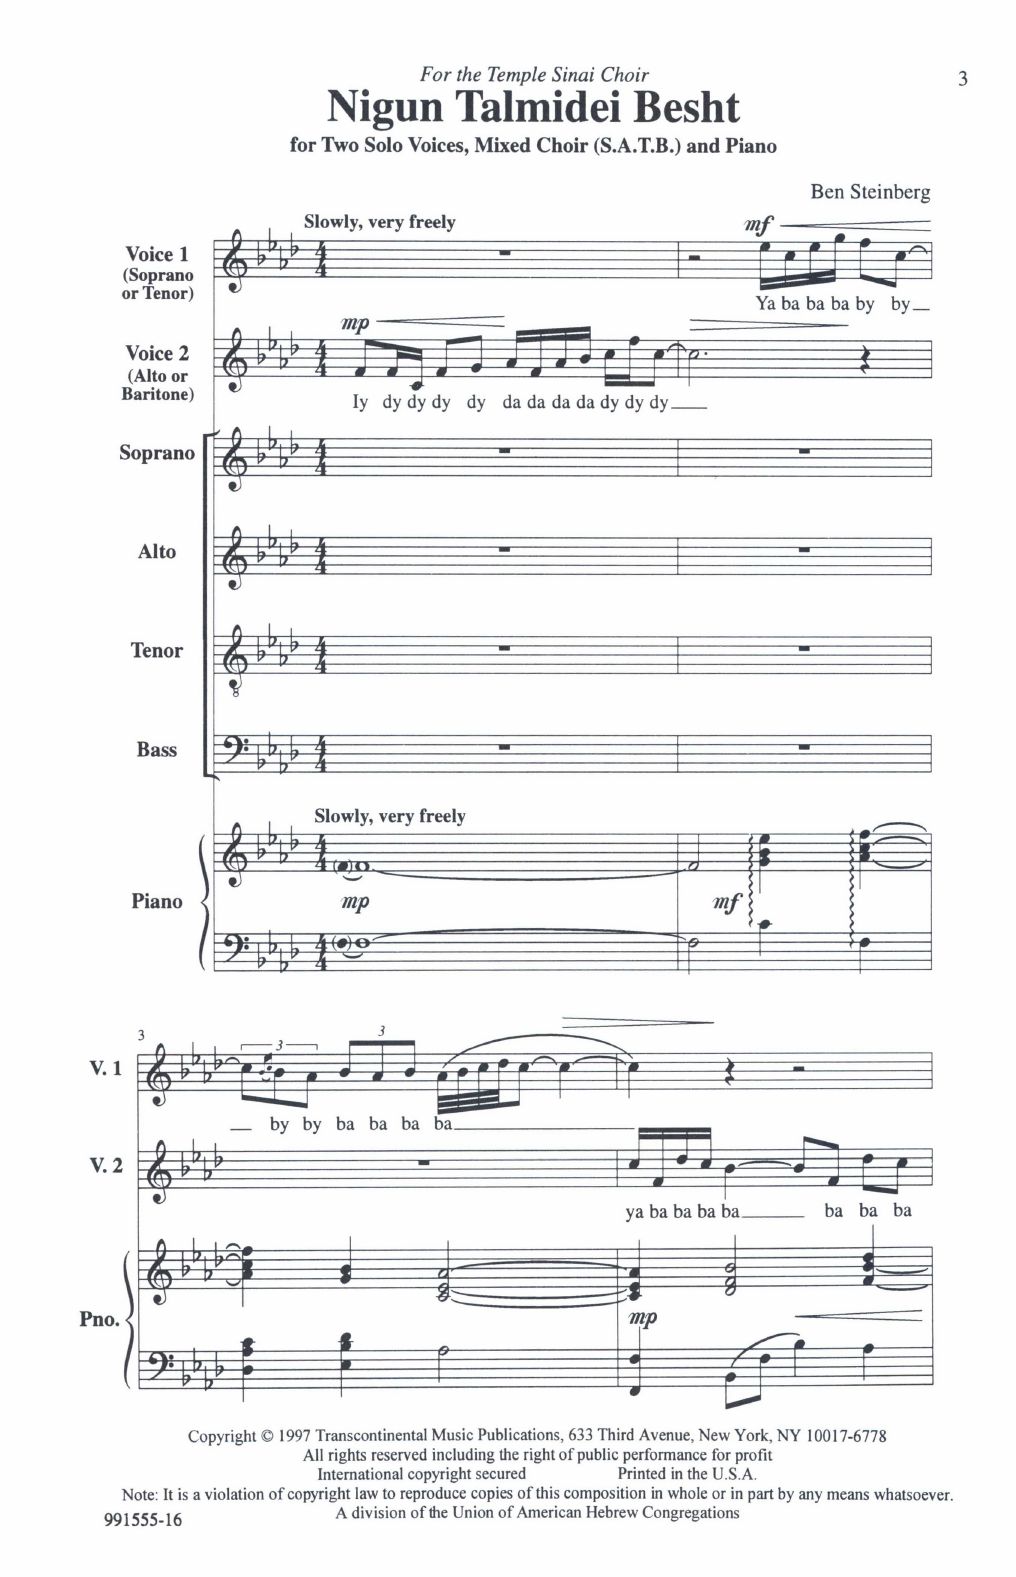 Ben Steinberg Nigun Talmidei Besht Sheet Music Notes & Chords for SATB Choir - Download or Print PDF